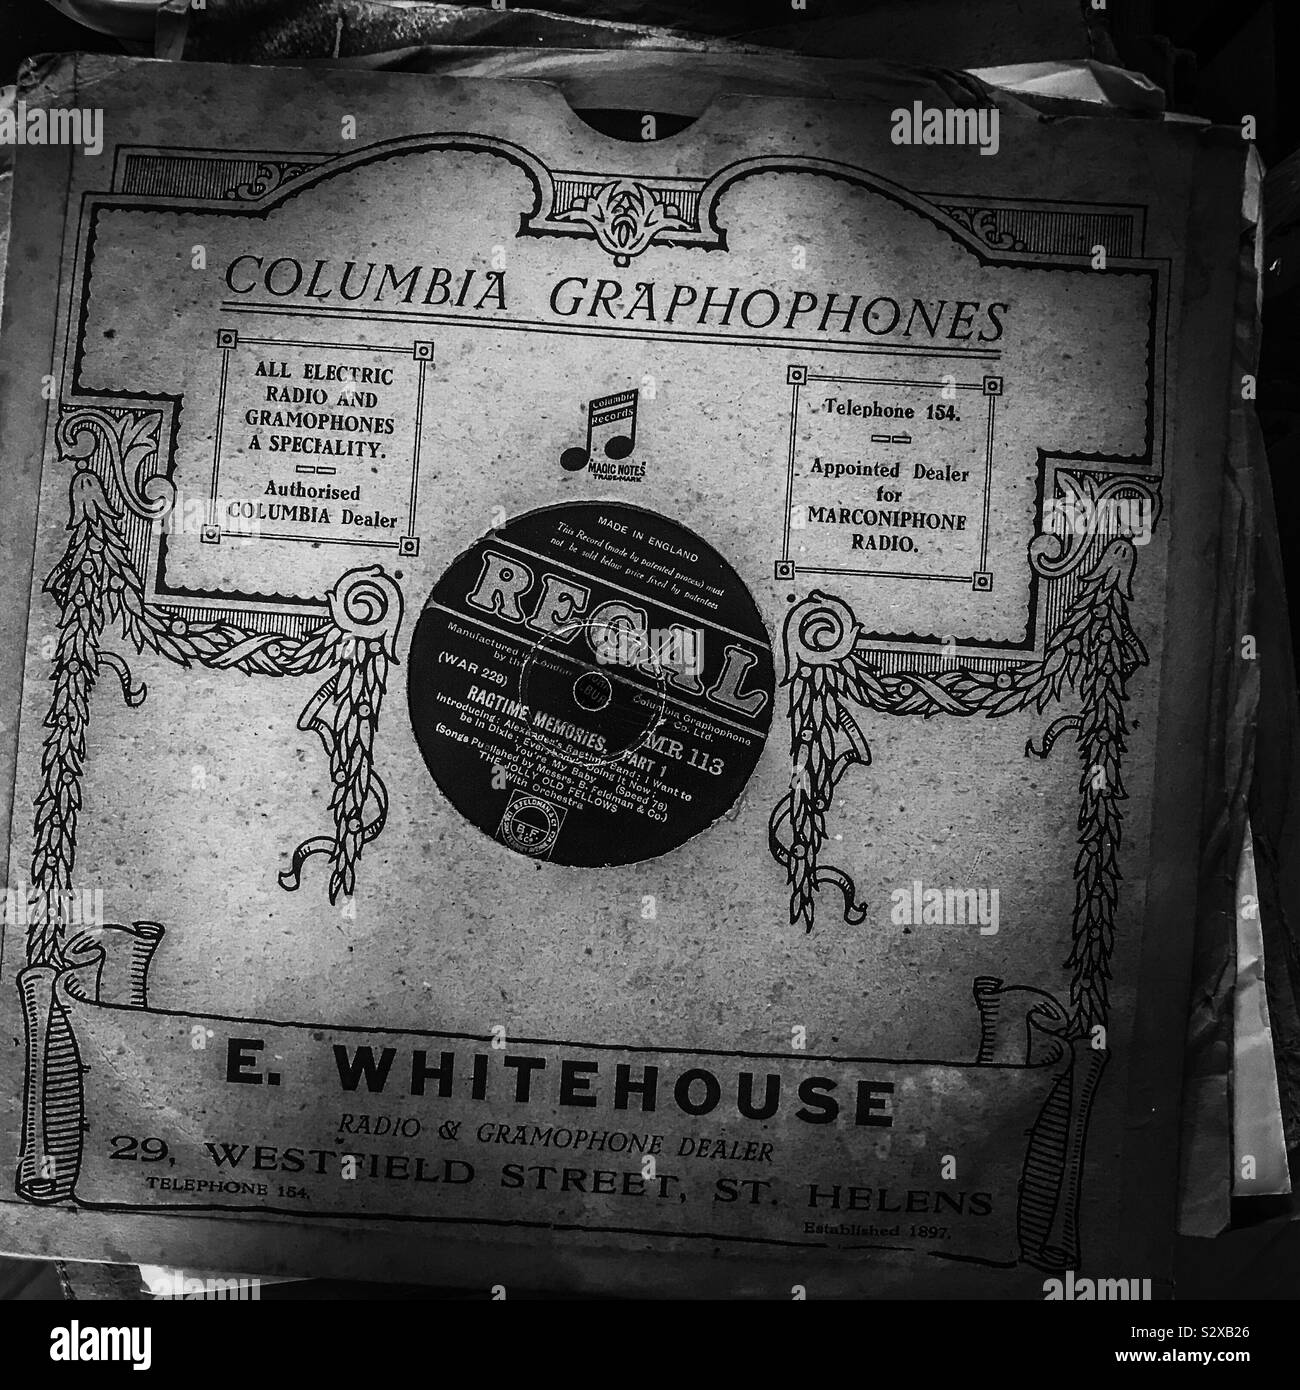 Un vecchio grammofono disco record nel suo manicotto originale da Regal; Colombia Graphophones E Whitehouse Foto Stock